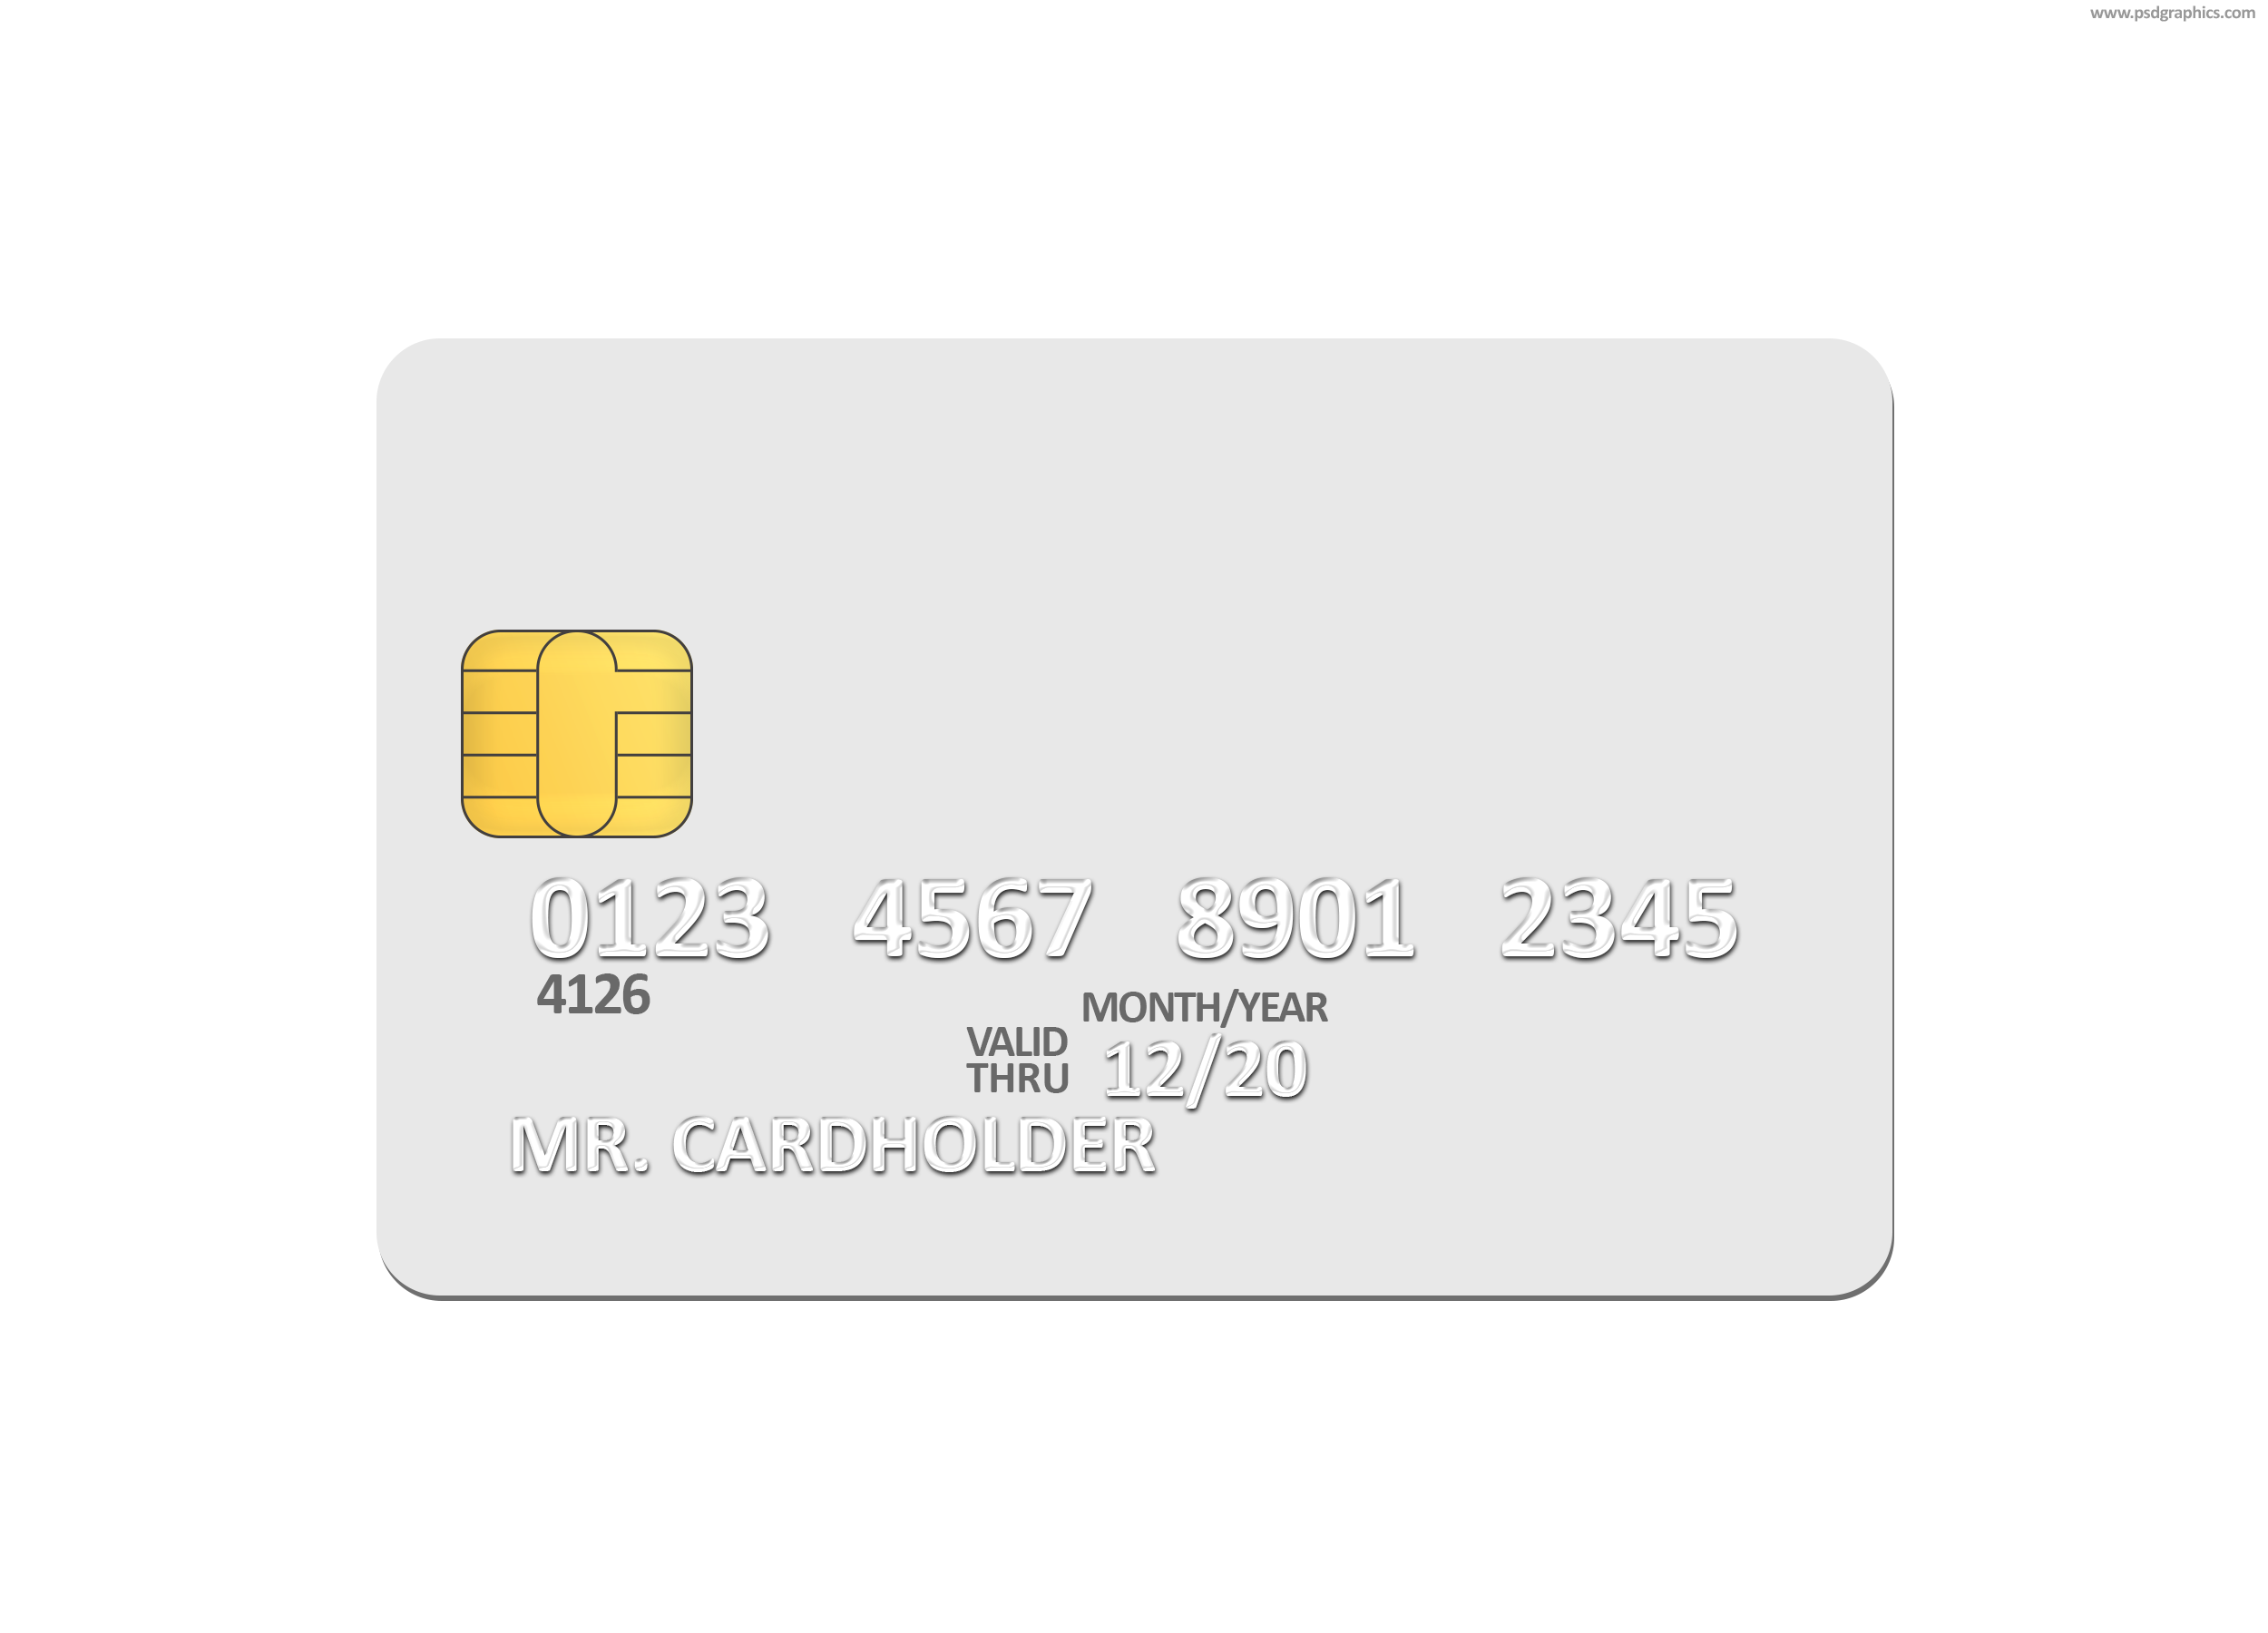 Статусы кредитных карт